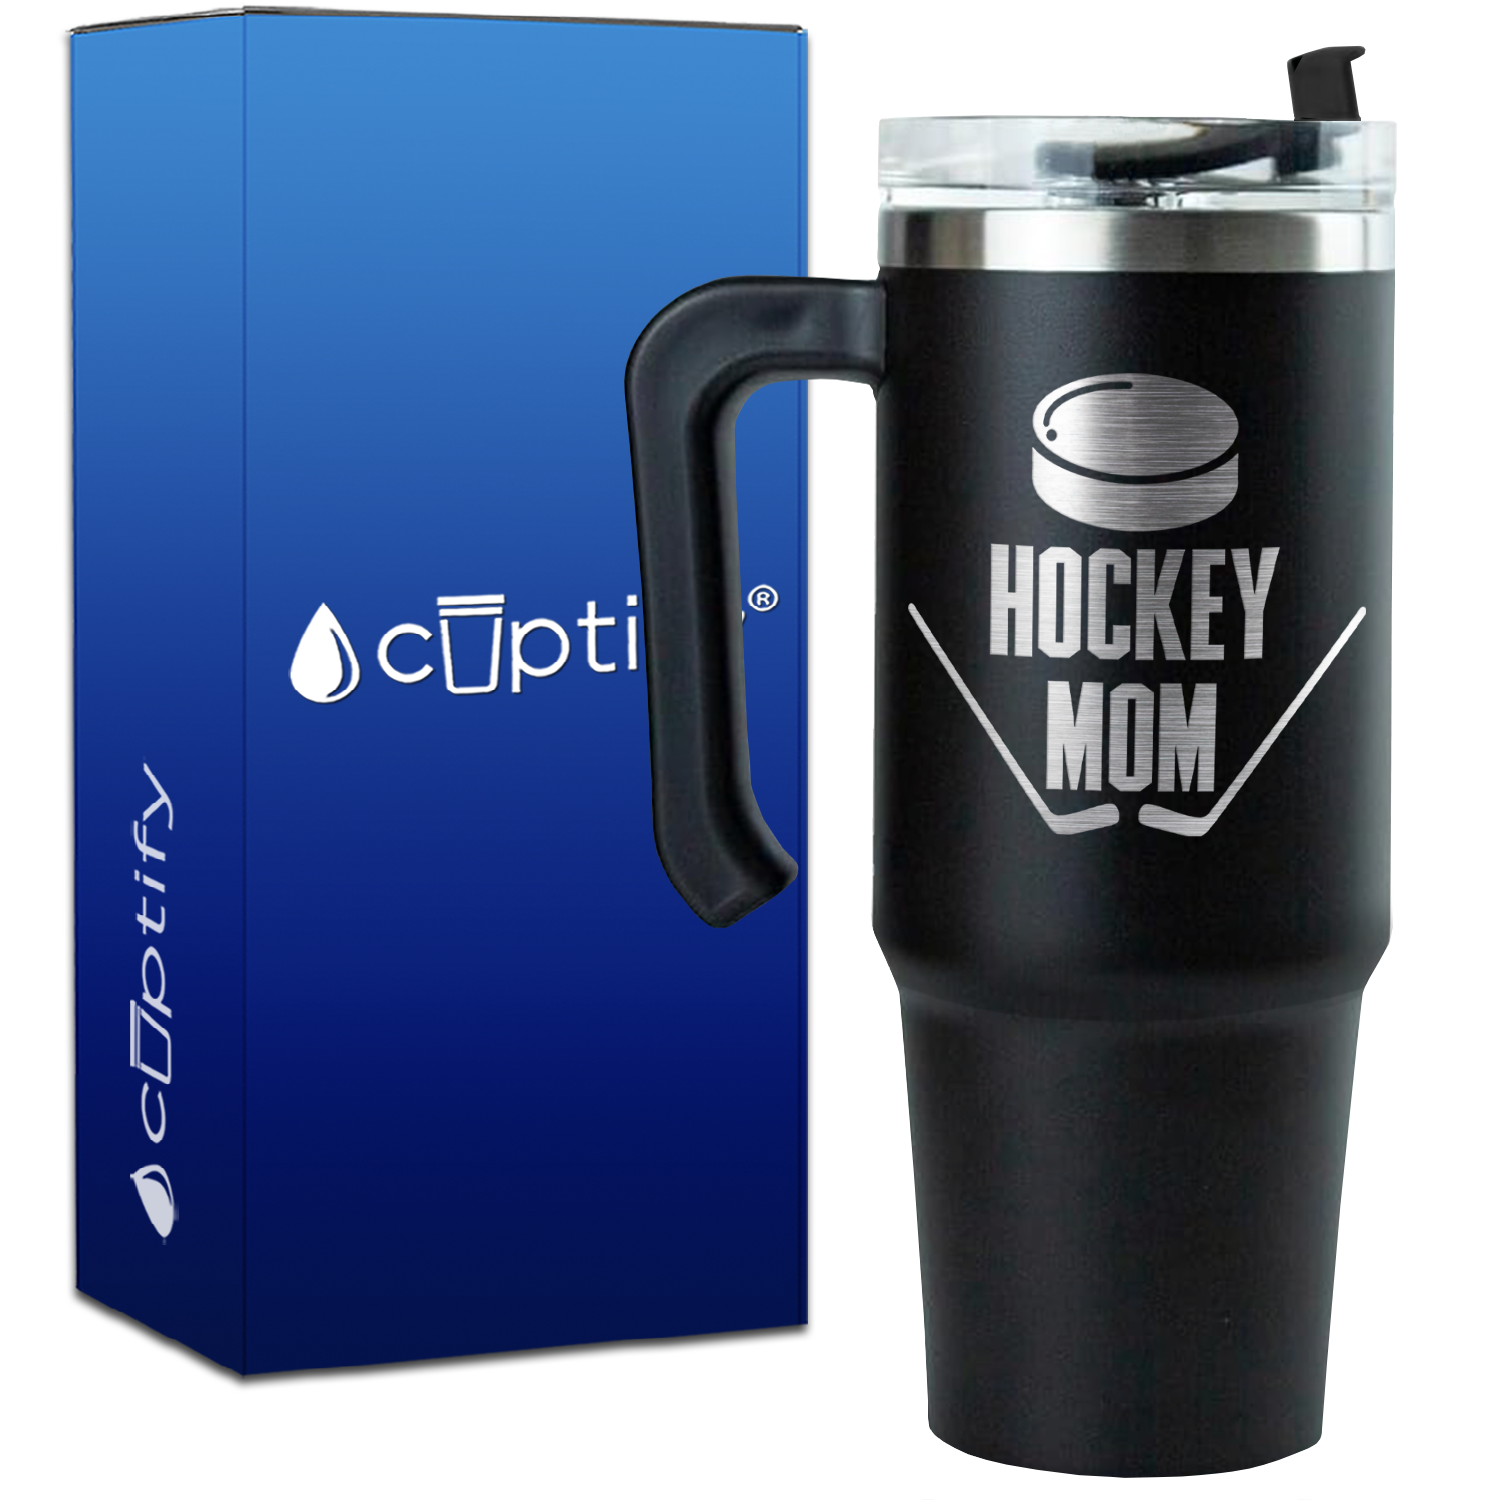 Hockey Mom on 30oz Hockey Travel Mug